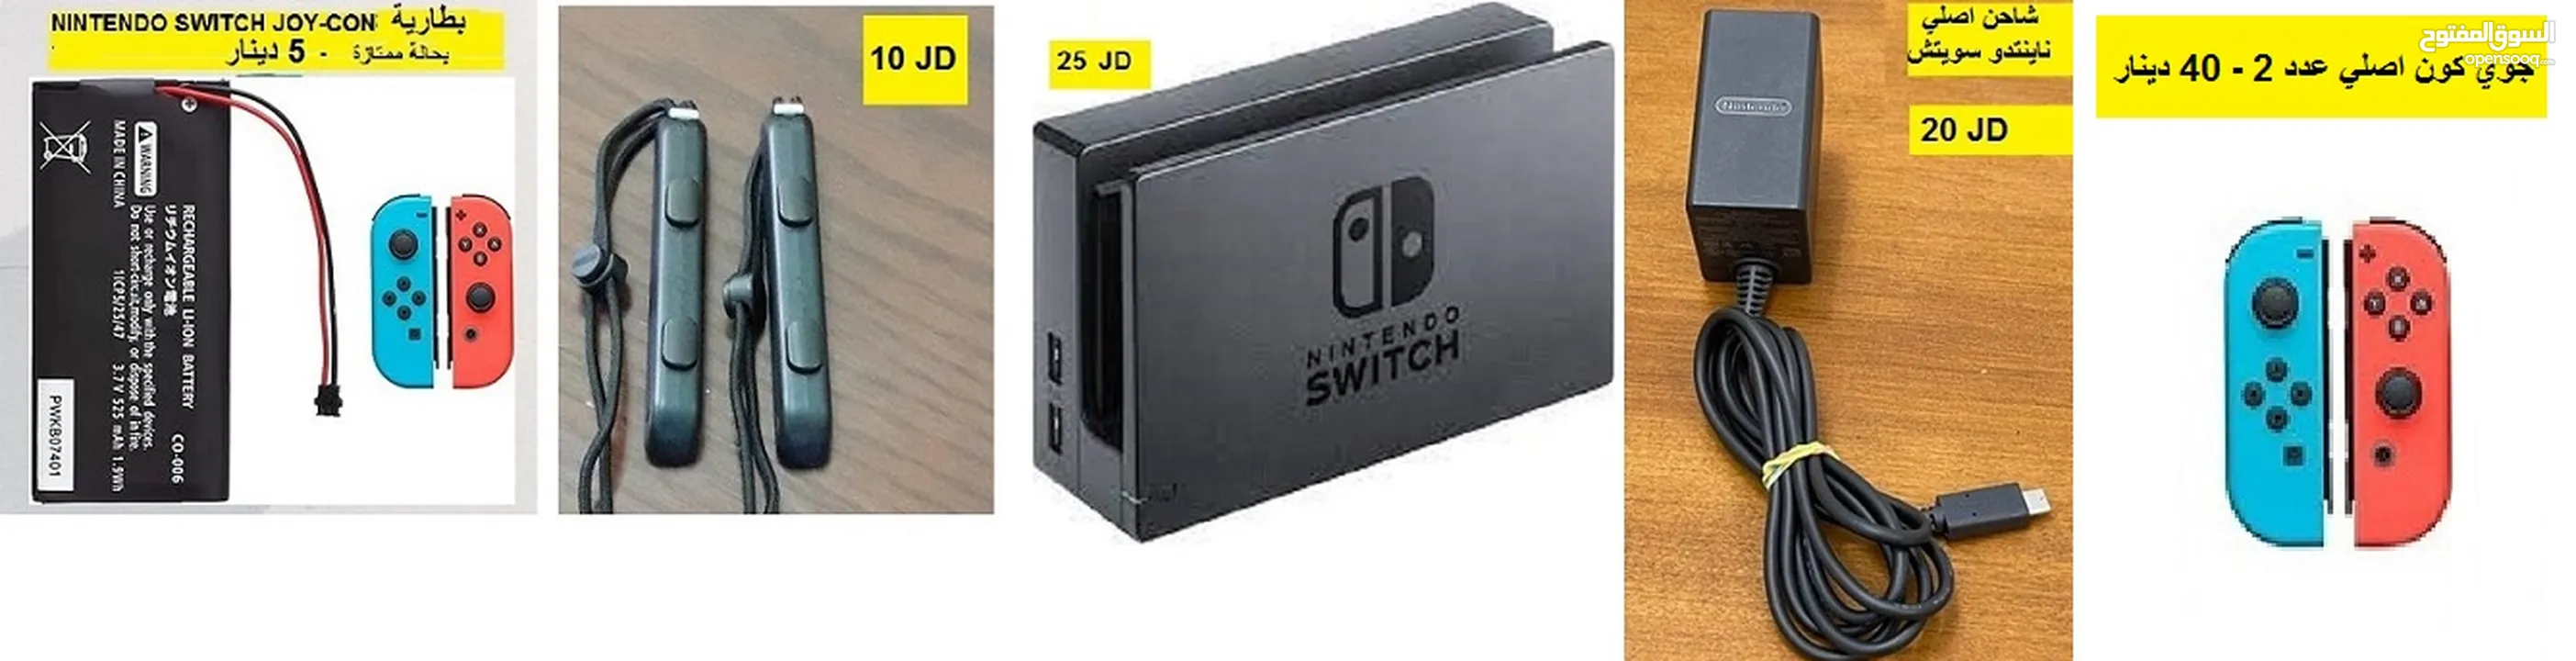 قطع العاب اجهزة ناينتدو Nintendo